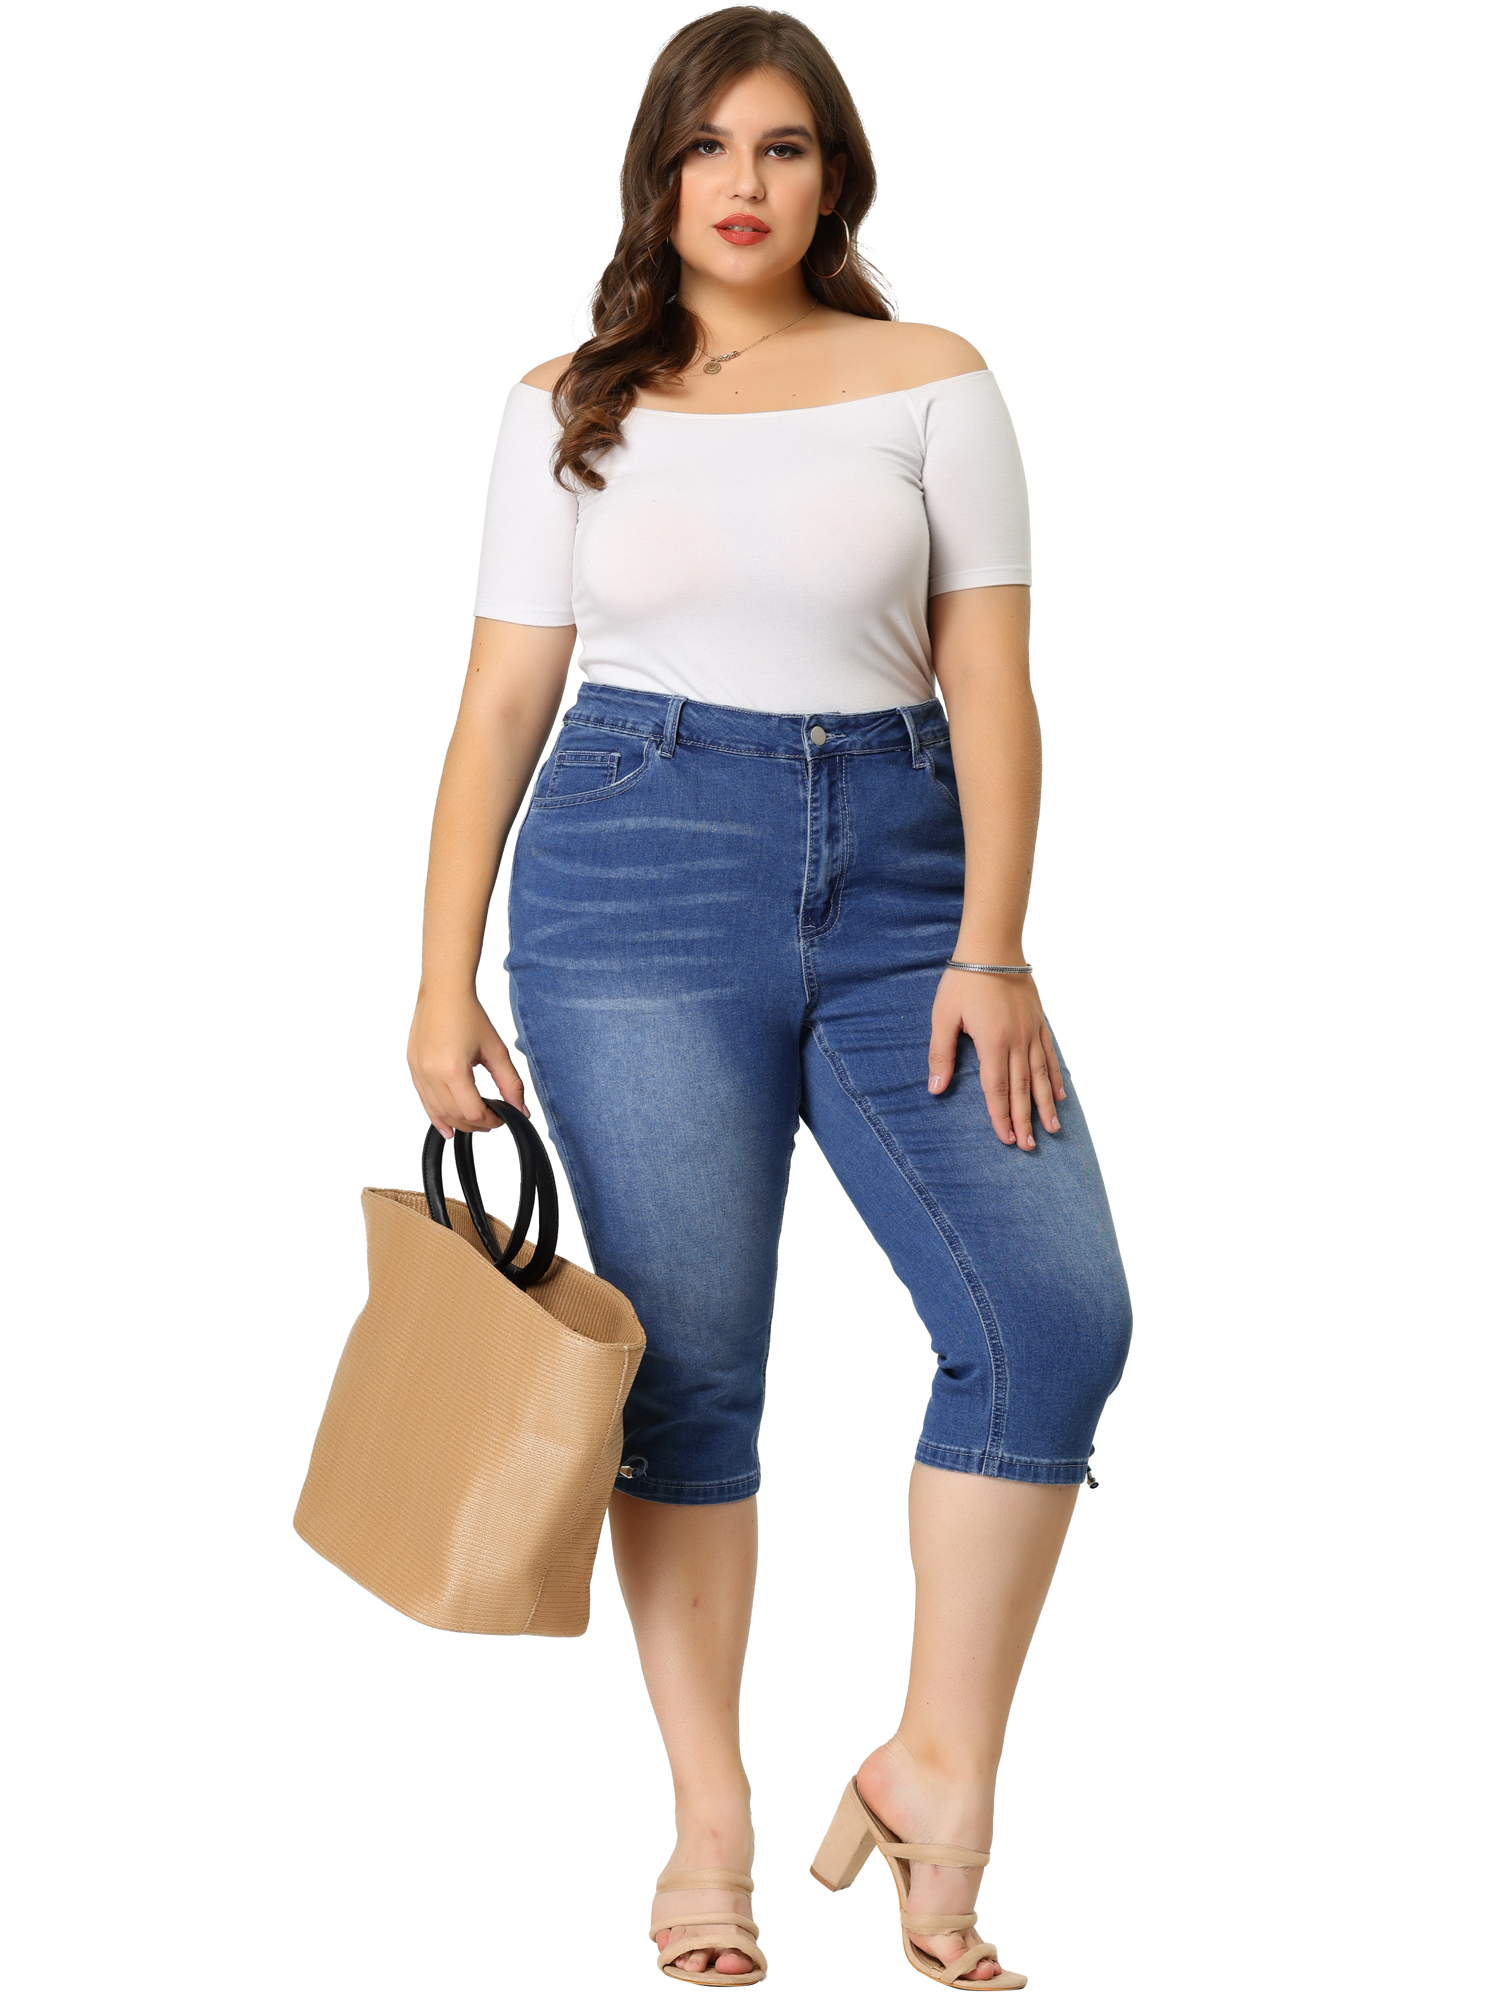 Unique Bargains Agnes Orinda Plus Size Denim Jeans for Women Mid Rise Fray Casual Cropped Jean Pants